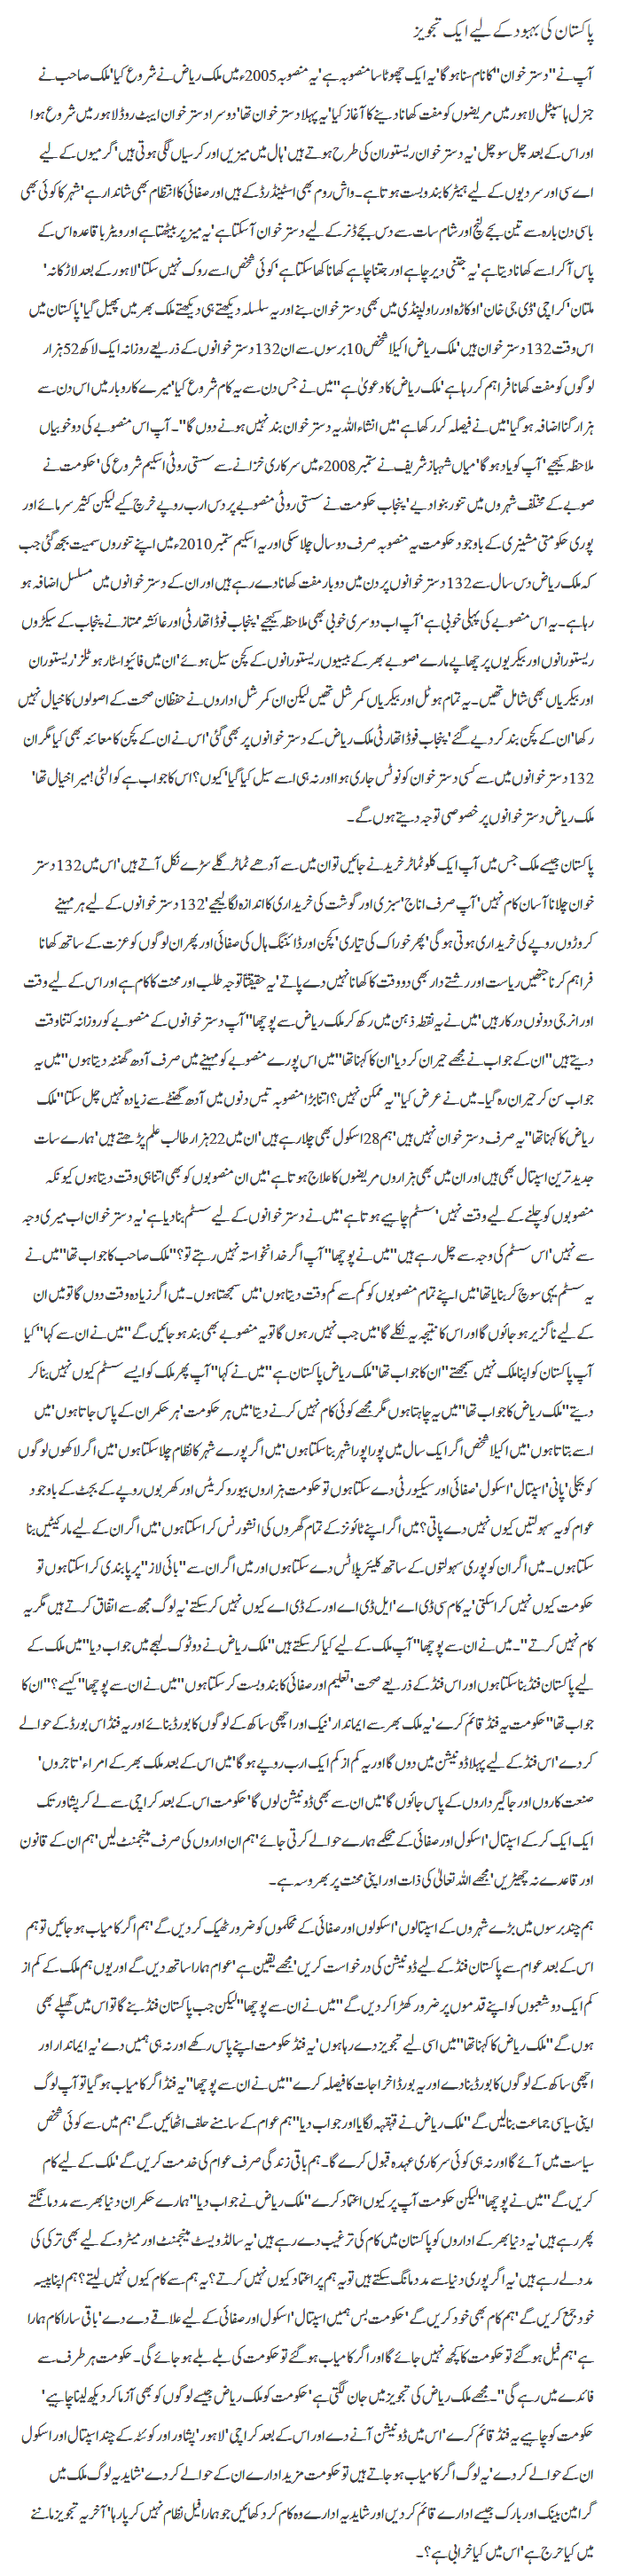 Pakistan ki behbood kay liye aik tajweez By Javed Chaudhry